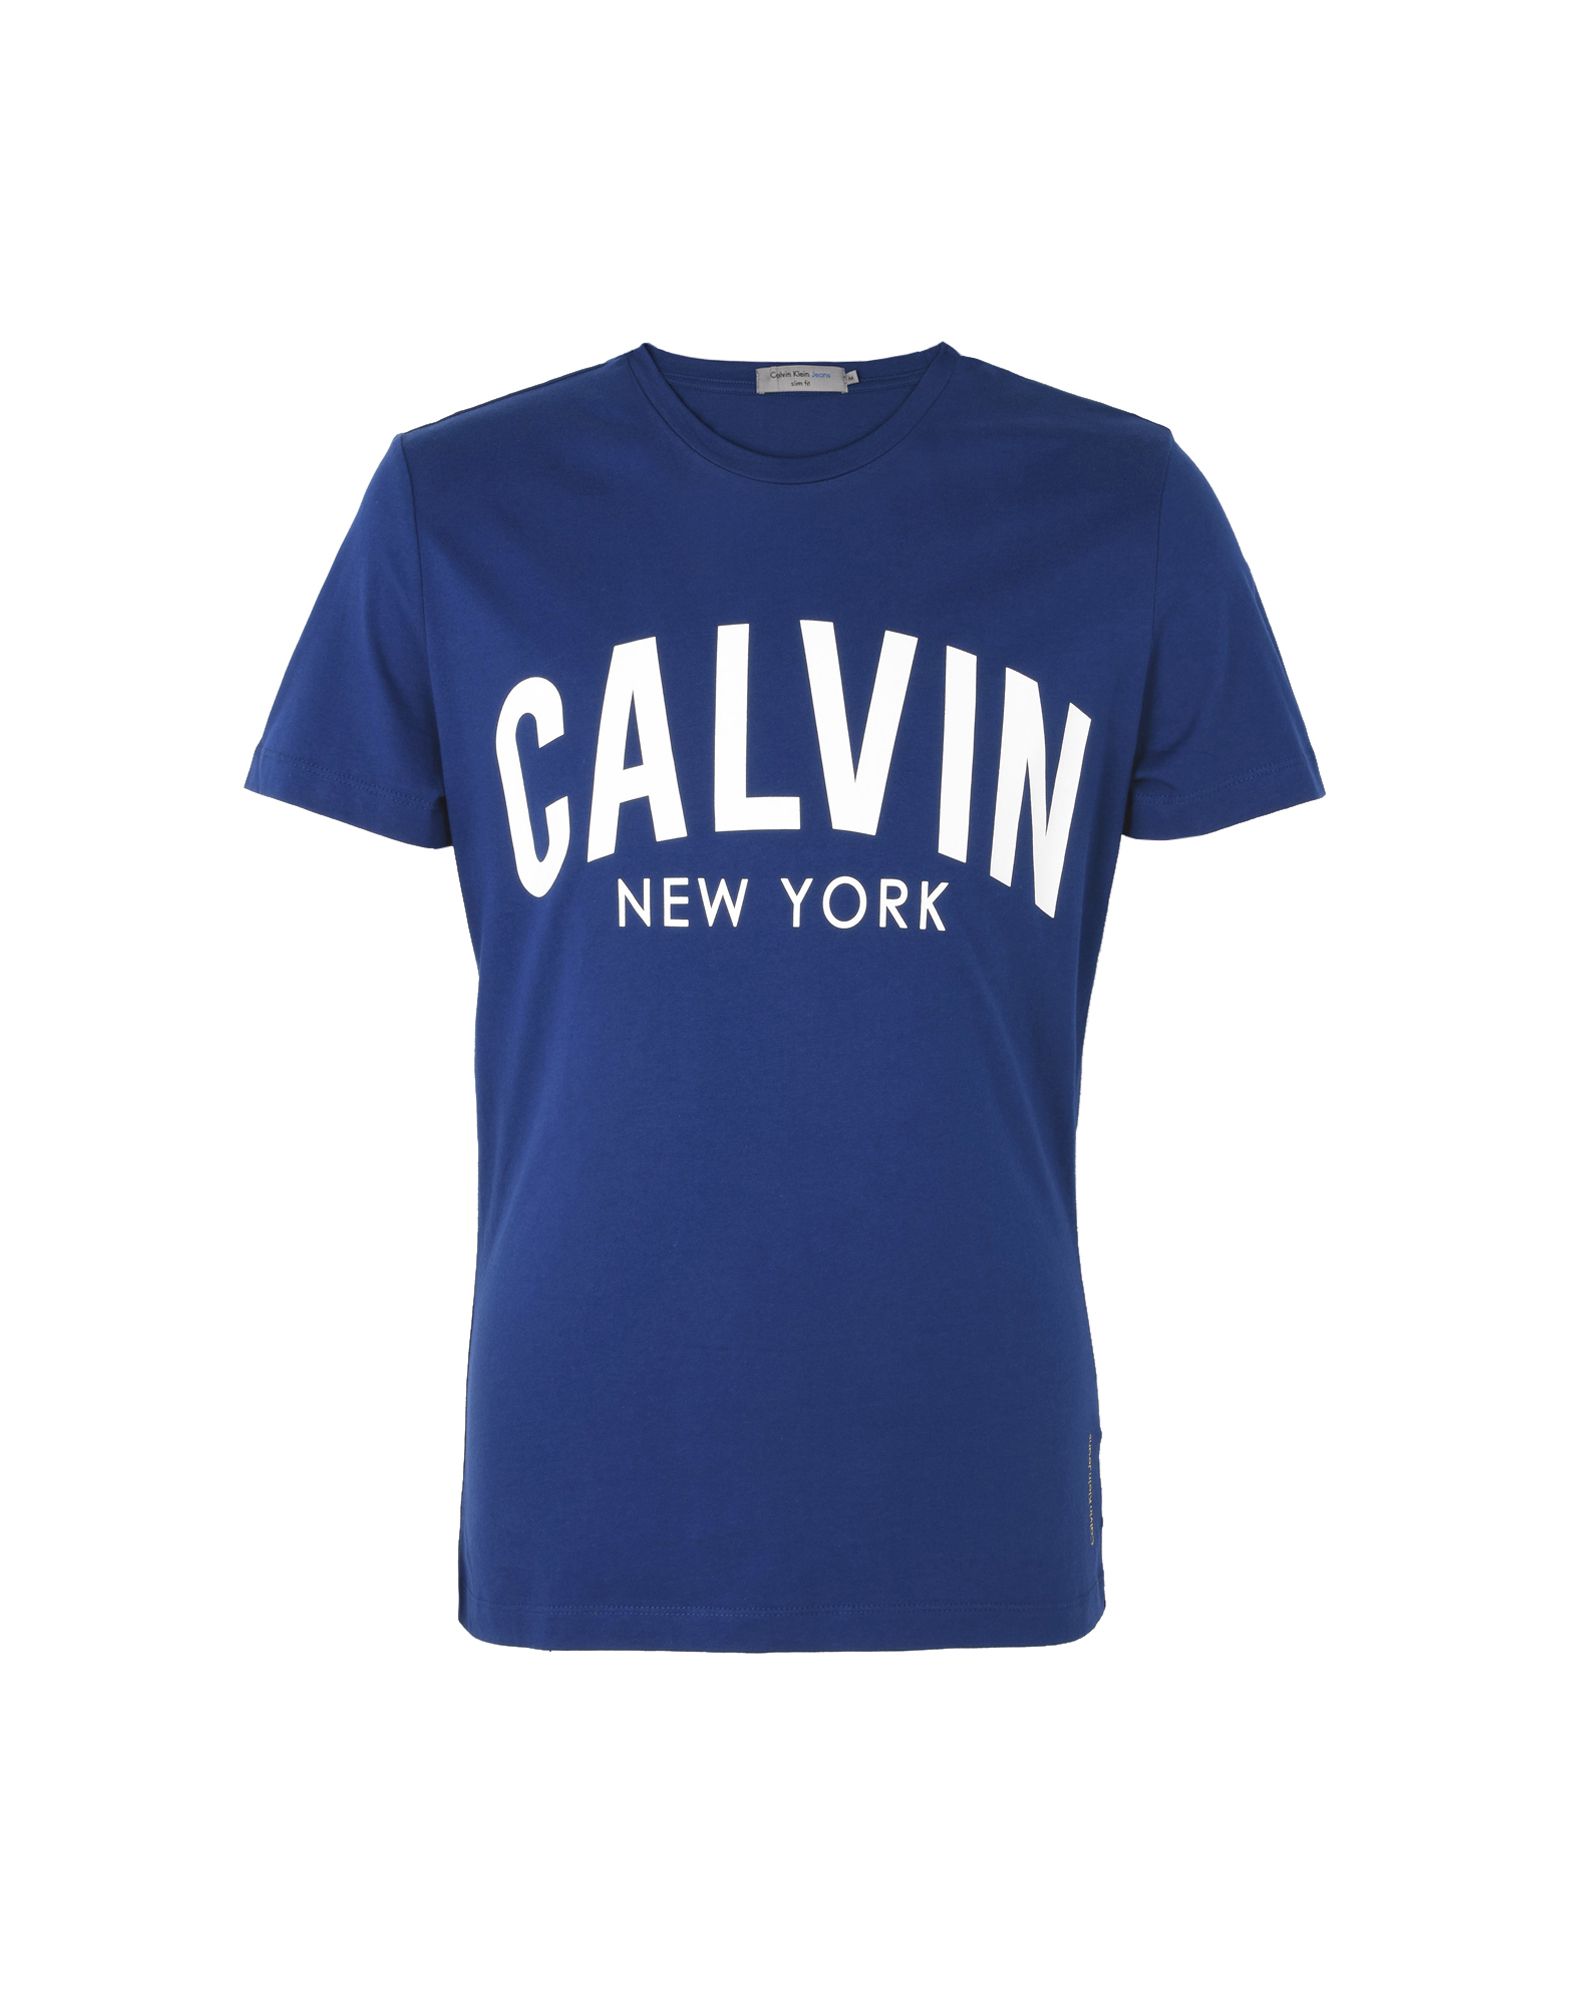 《送料無料》CALVIN KLEIN JEANS メンズ T シャツ ブルー M コットン 100% EUROPE MEN 4500210271